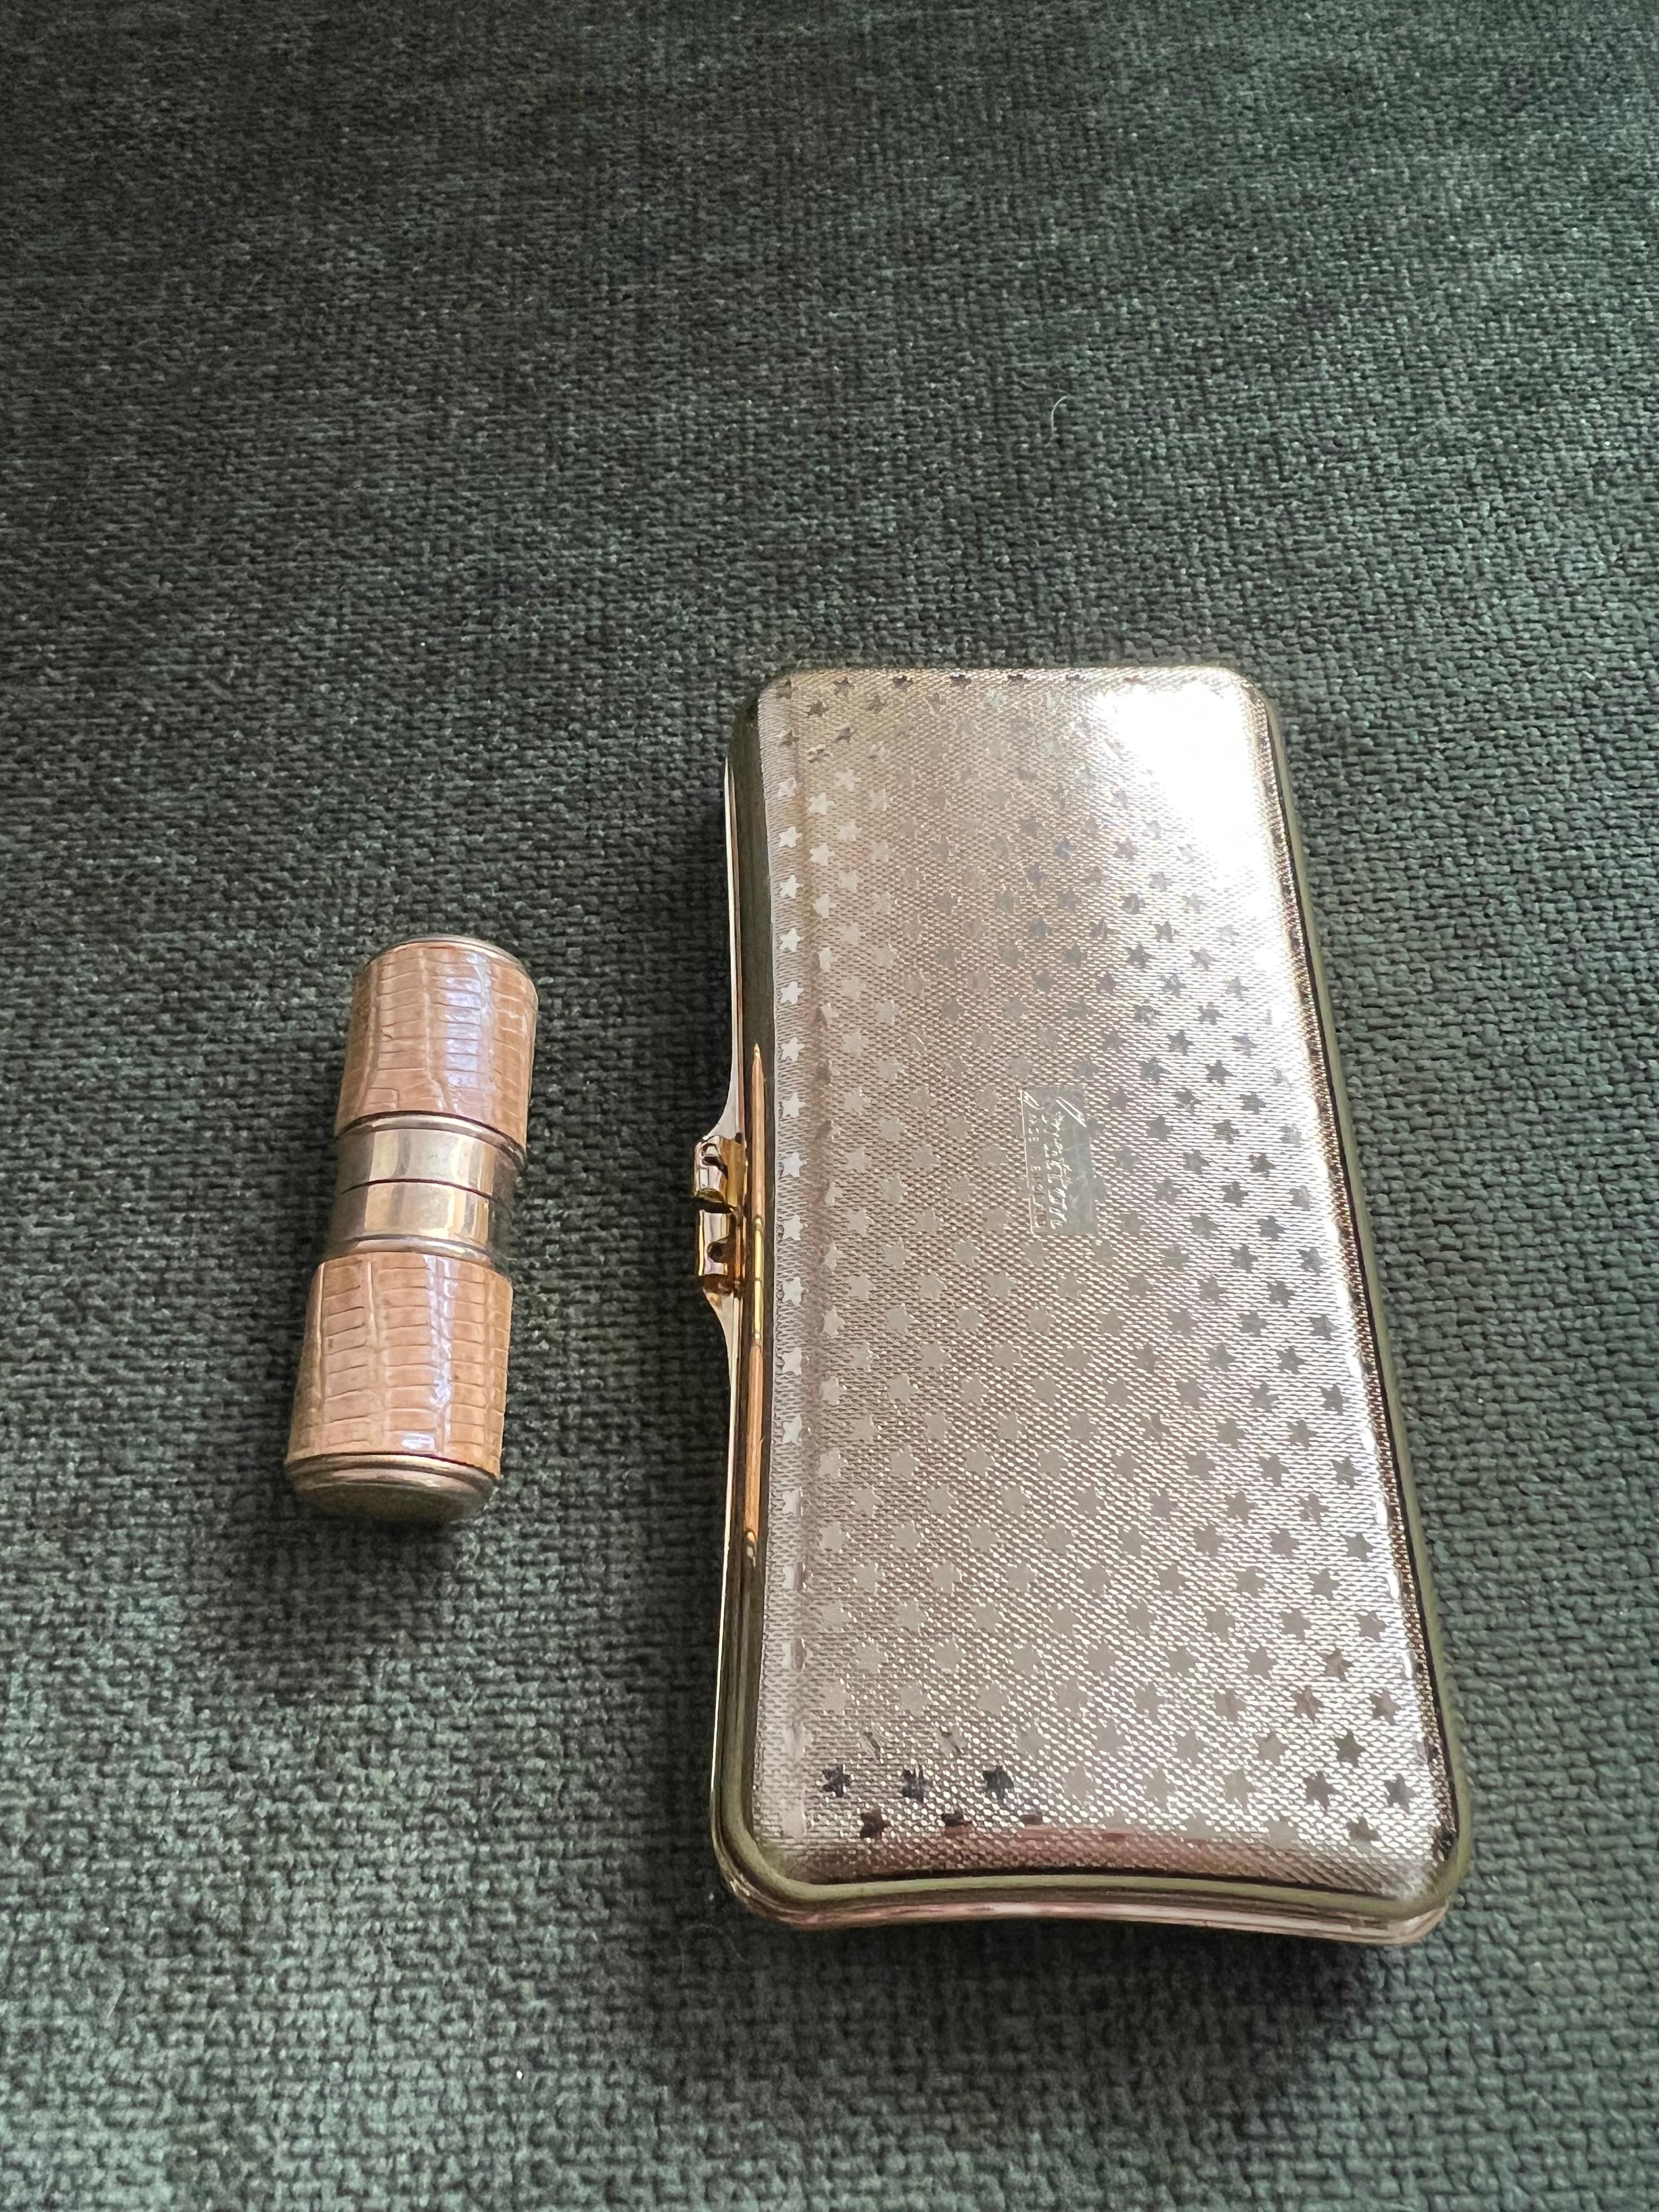 cigarette case and lighter set